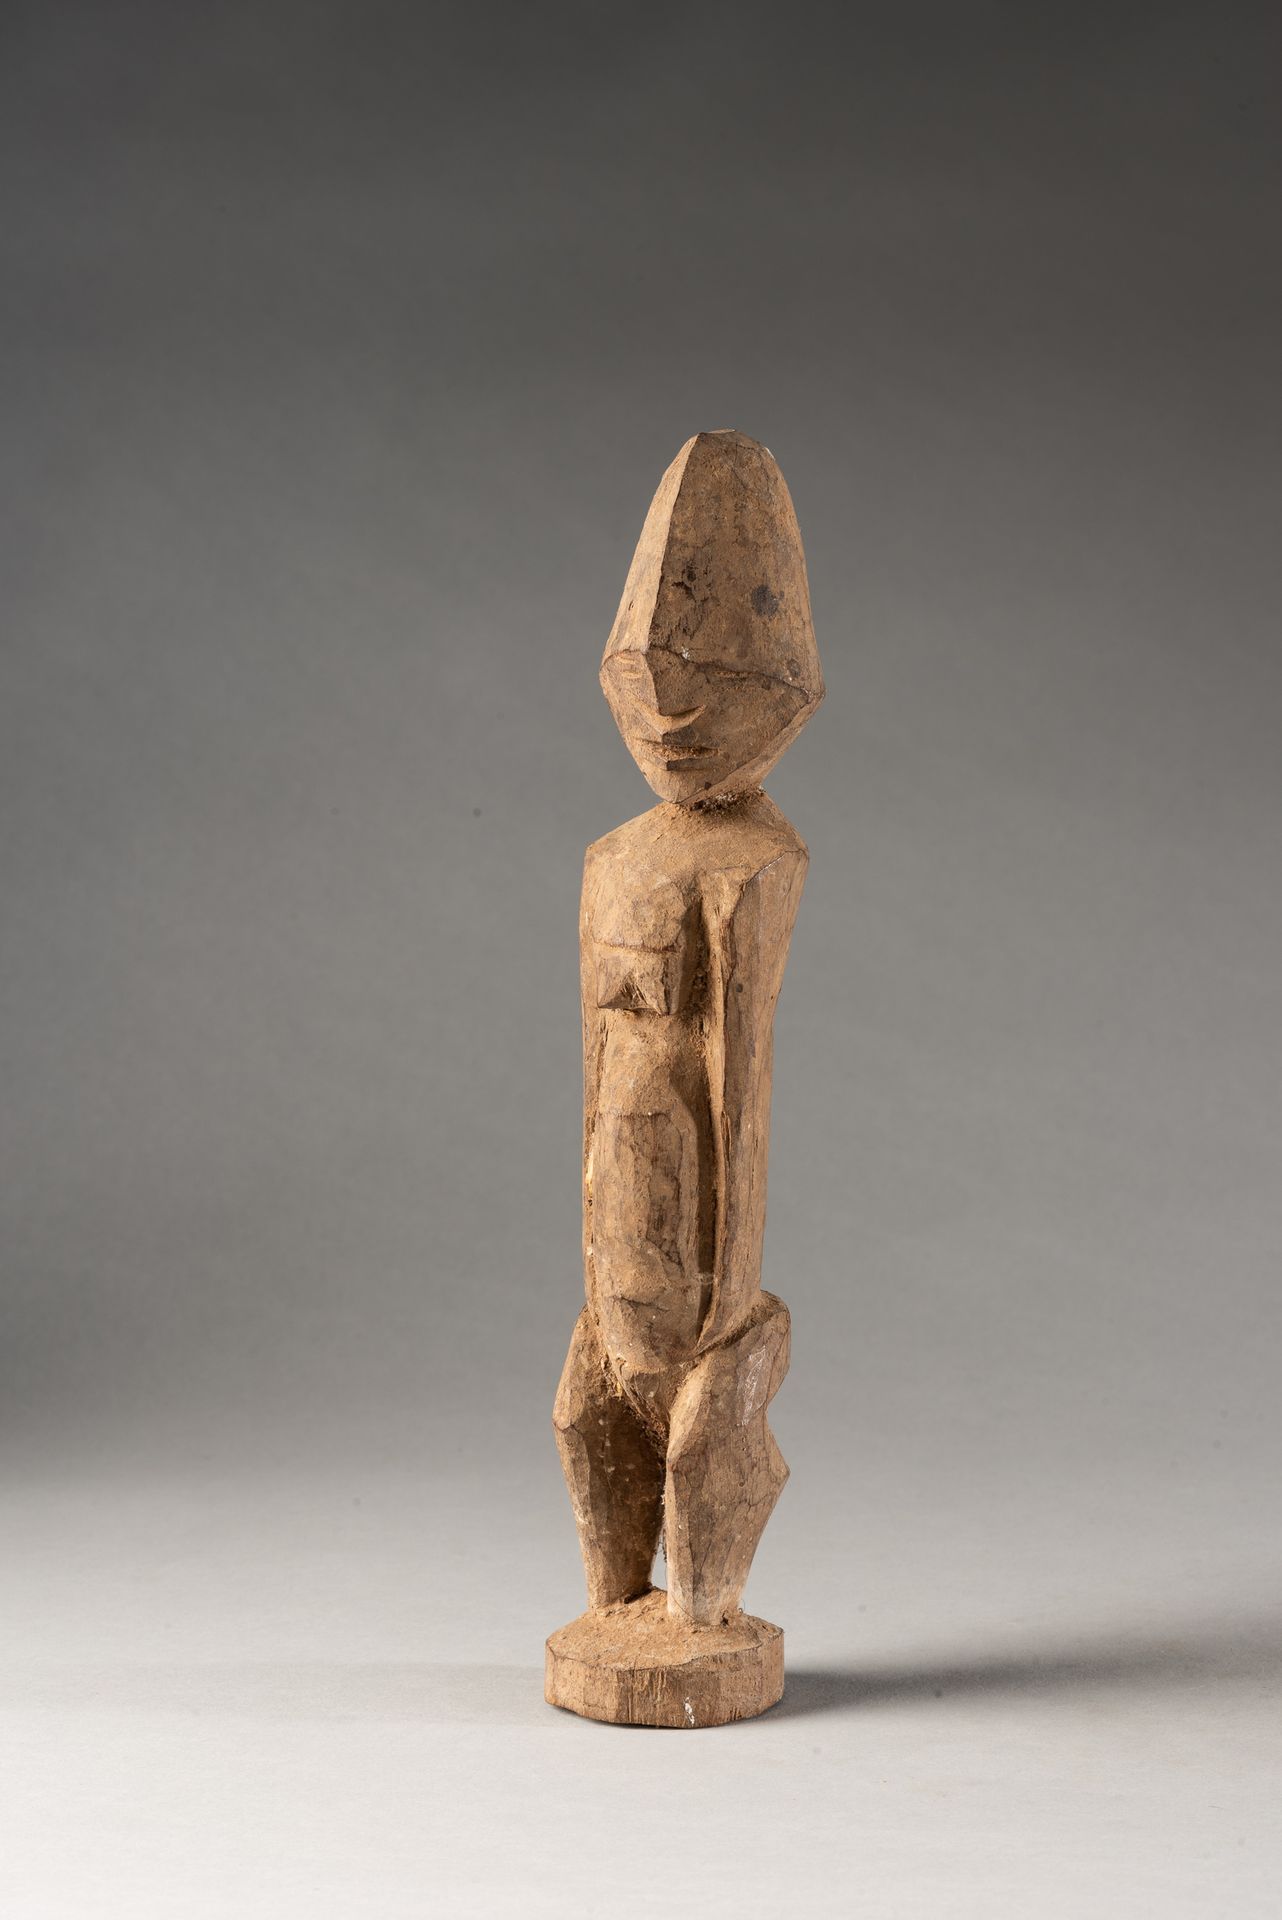 People Gurunsi "加纳古伦西人的木制雕像--古伦西人制作的设计简单的木制雕像。该物品状况良好，没有明显的磨损痕迹。





原产地: 加纳


&hellip;